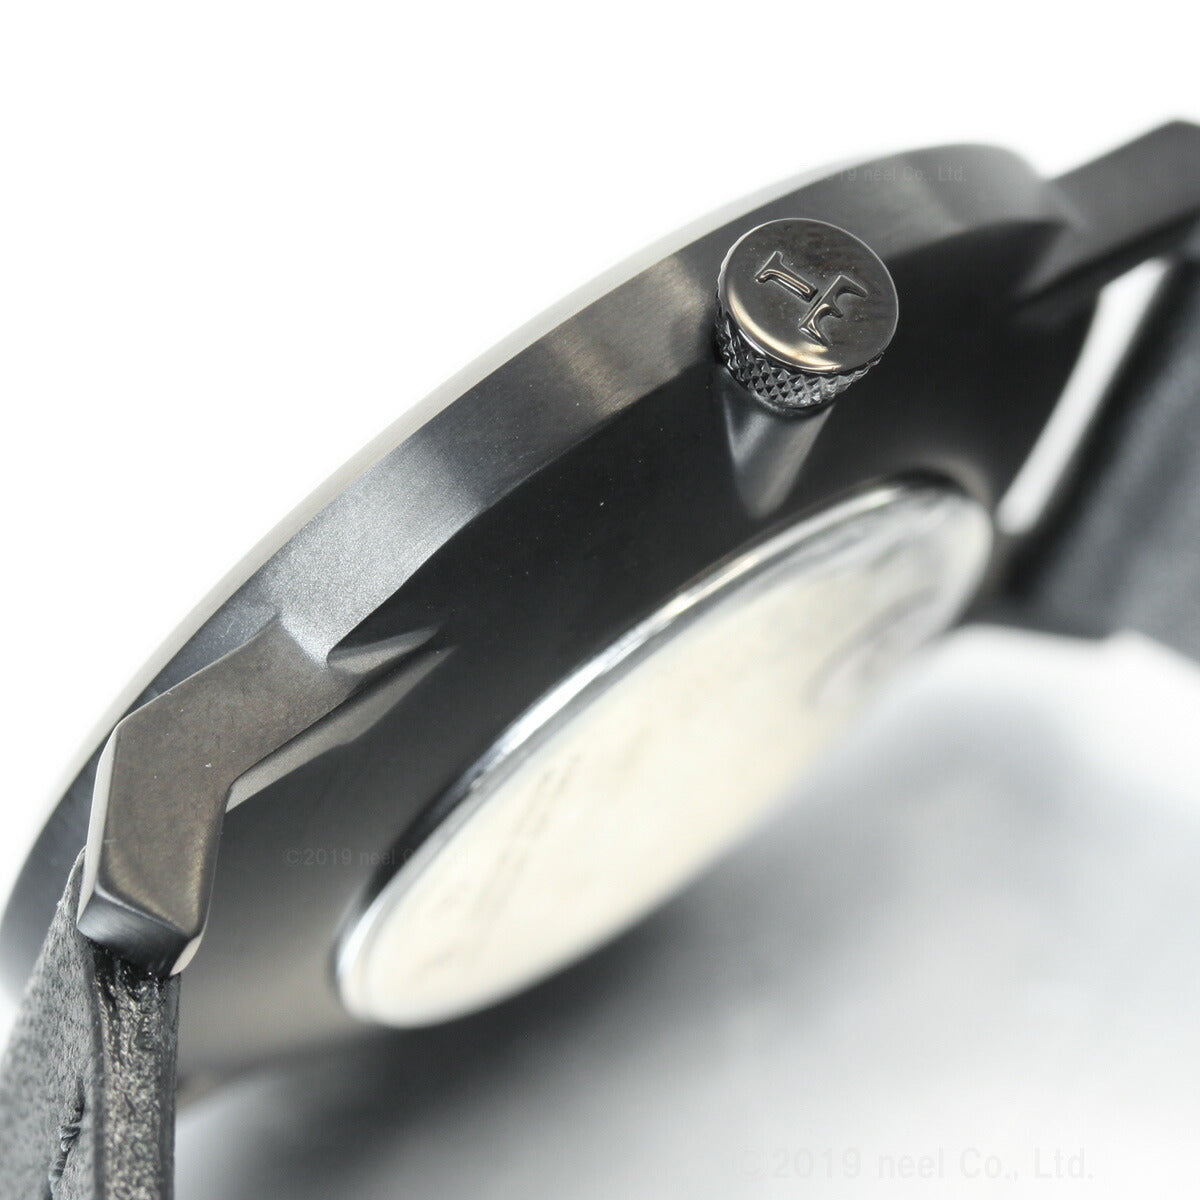 トリワ TRIWA 腕時計 メンズ レディース ミッドナイト ファルケン MIDNIGHT FALKEN FAST115-CL010101